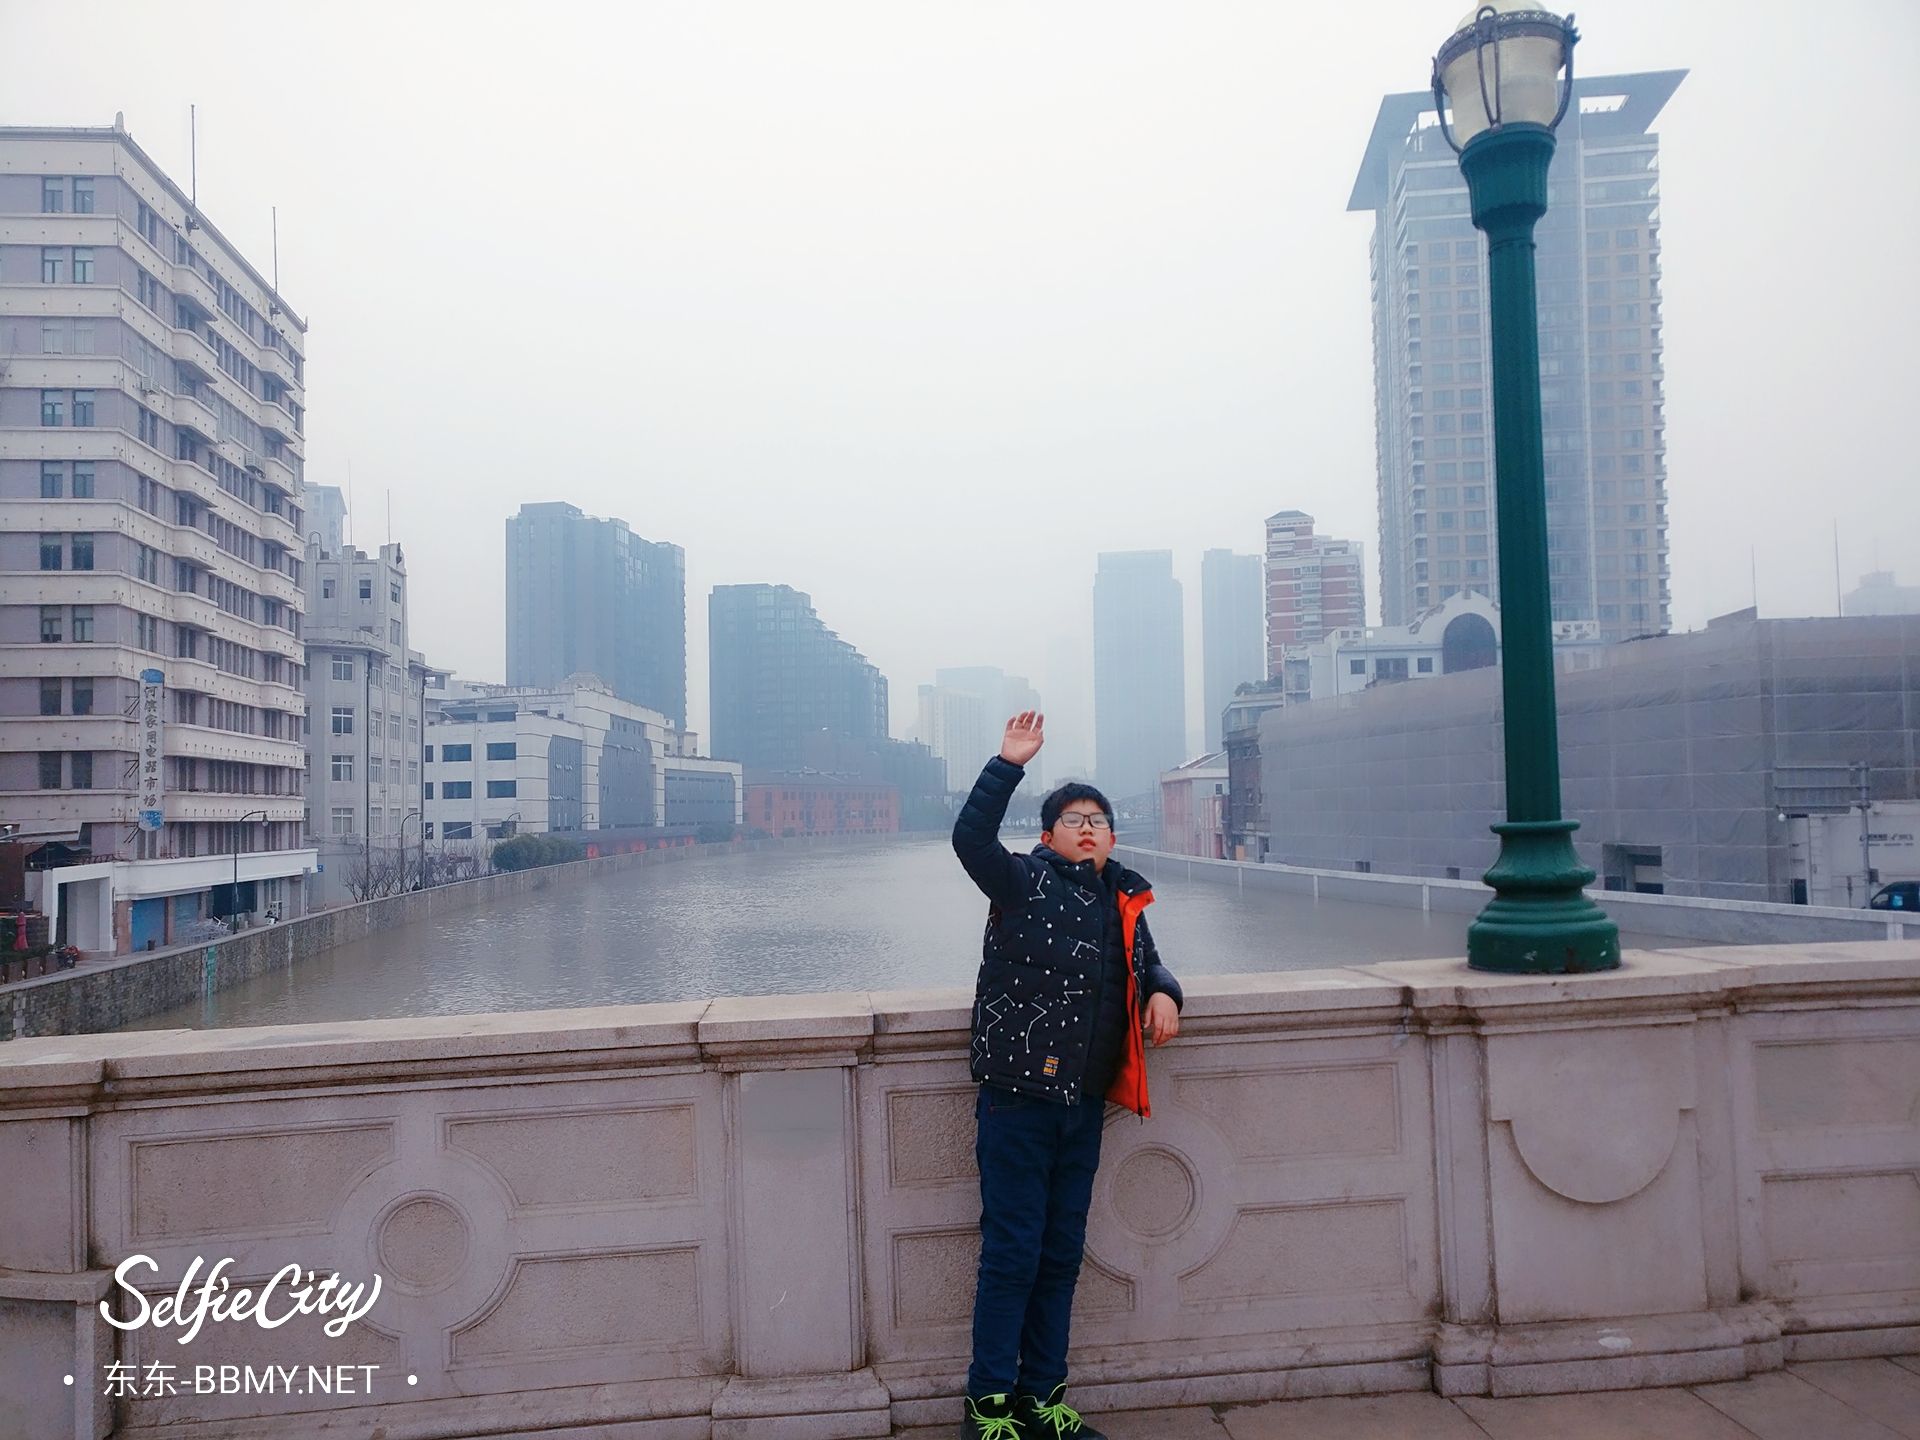 金东浩成长日记上海游记之街拍照片SelfieCity_20210922220149_org.jpg